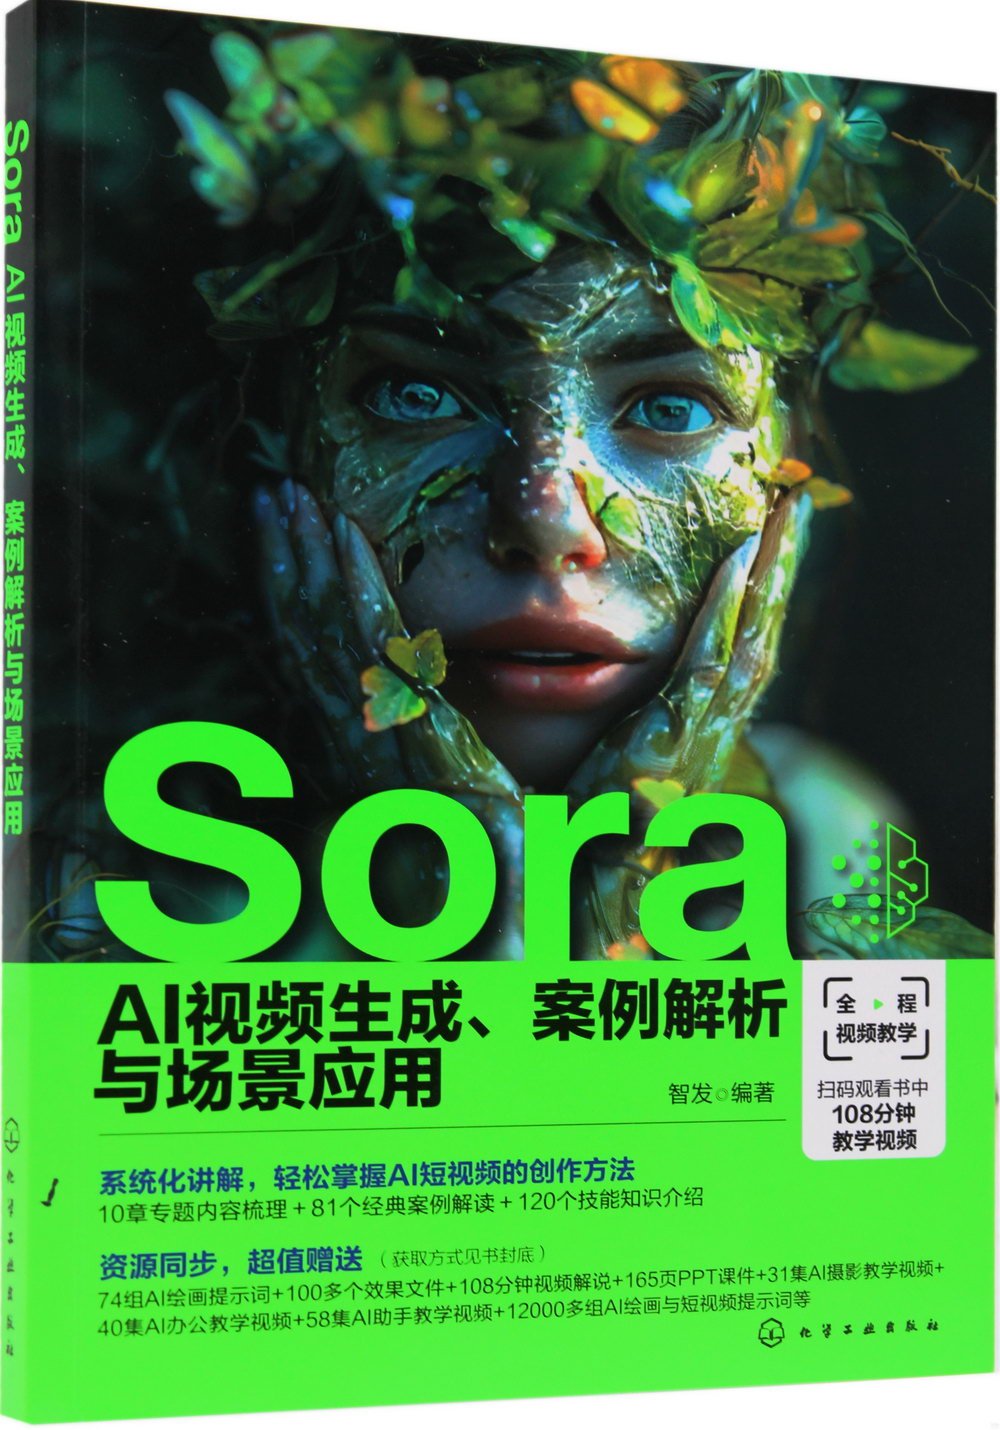 Sora AI視頻生成、案例解析與場景應用